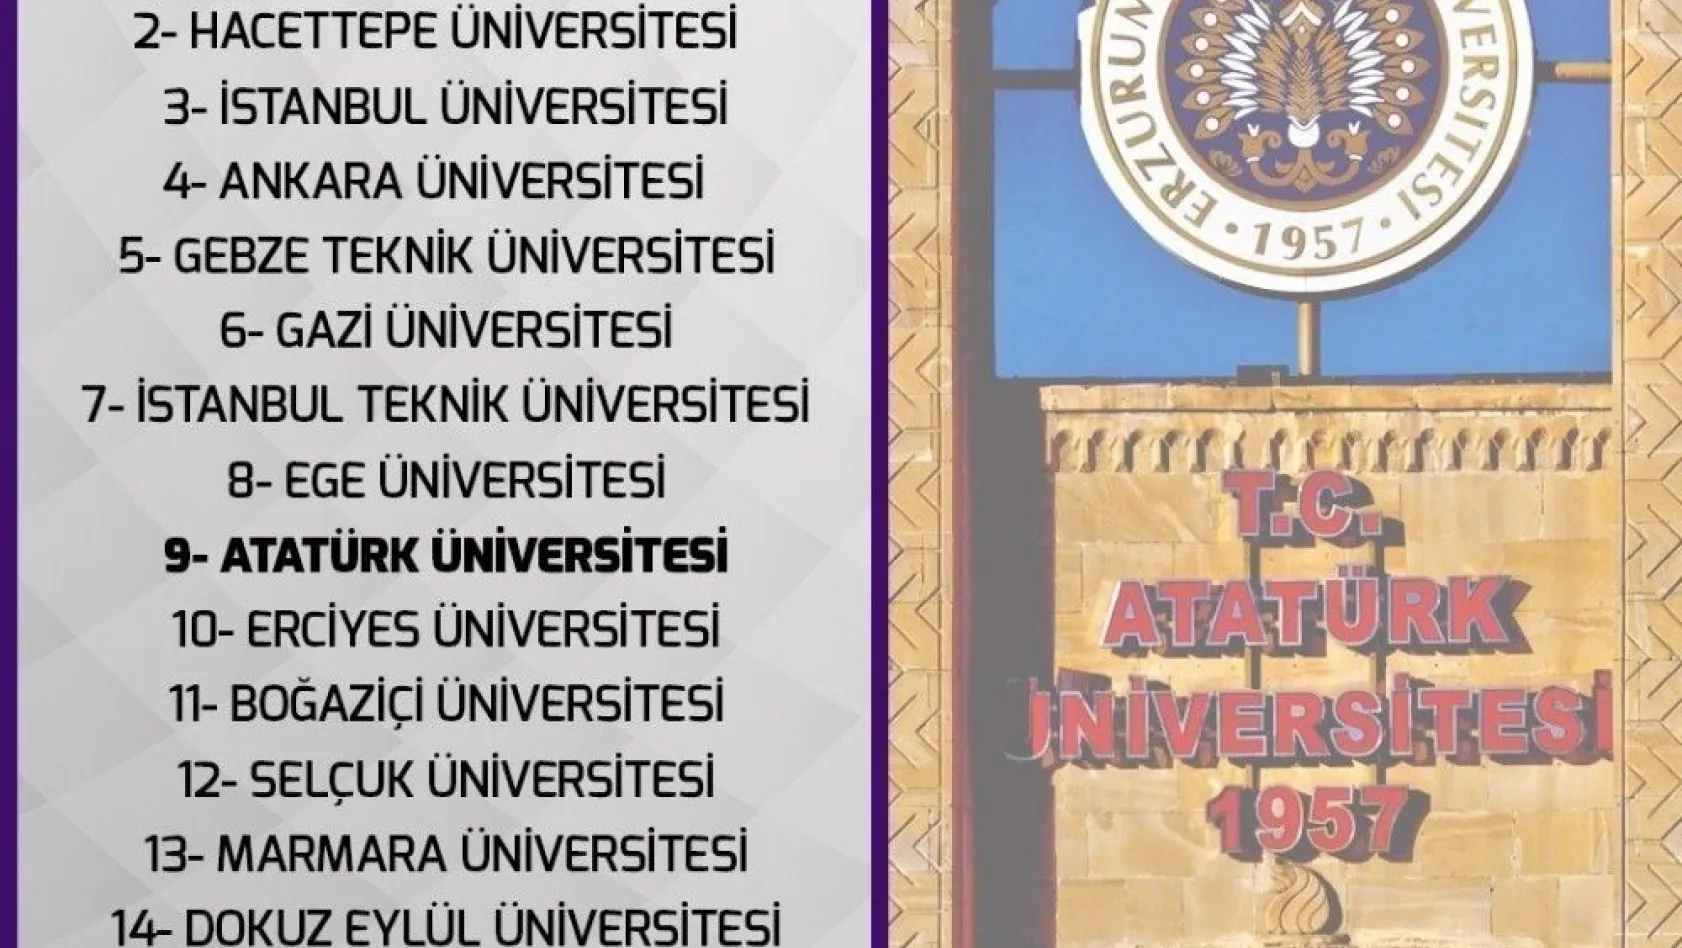 En başarılı üniversiteler sıralamasında Atatürk Üniversitesi 9. Sırada
